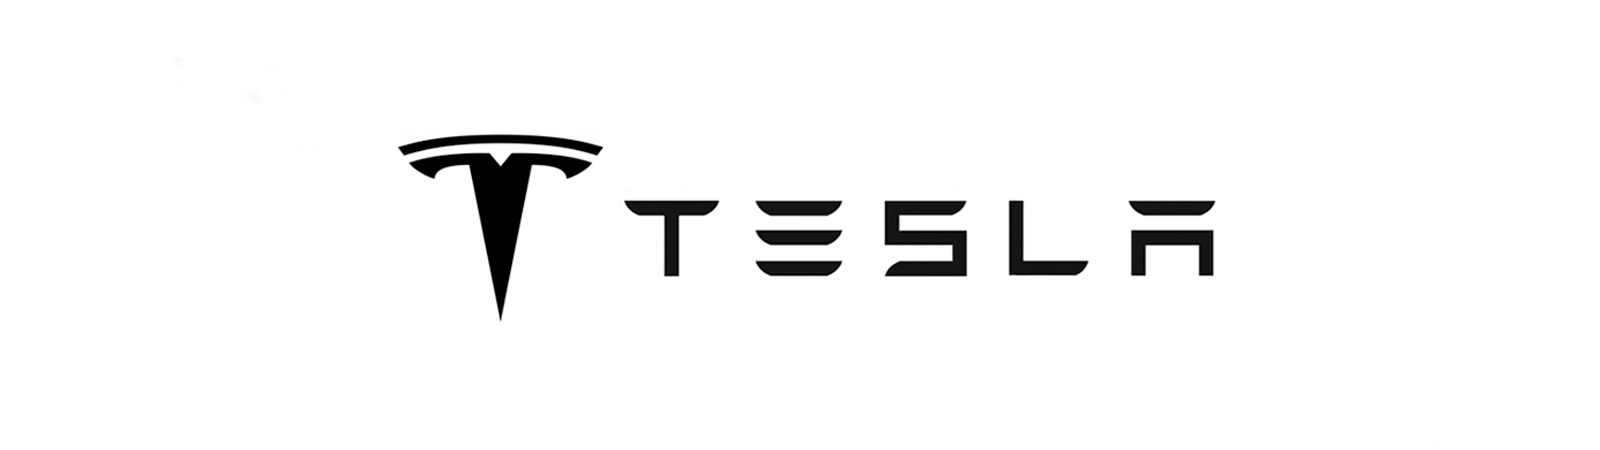 10. Tesla